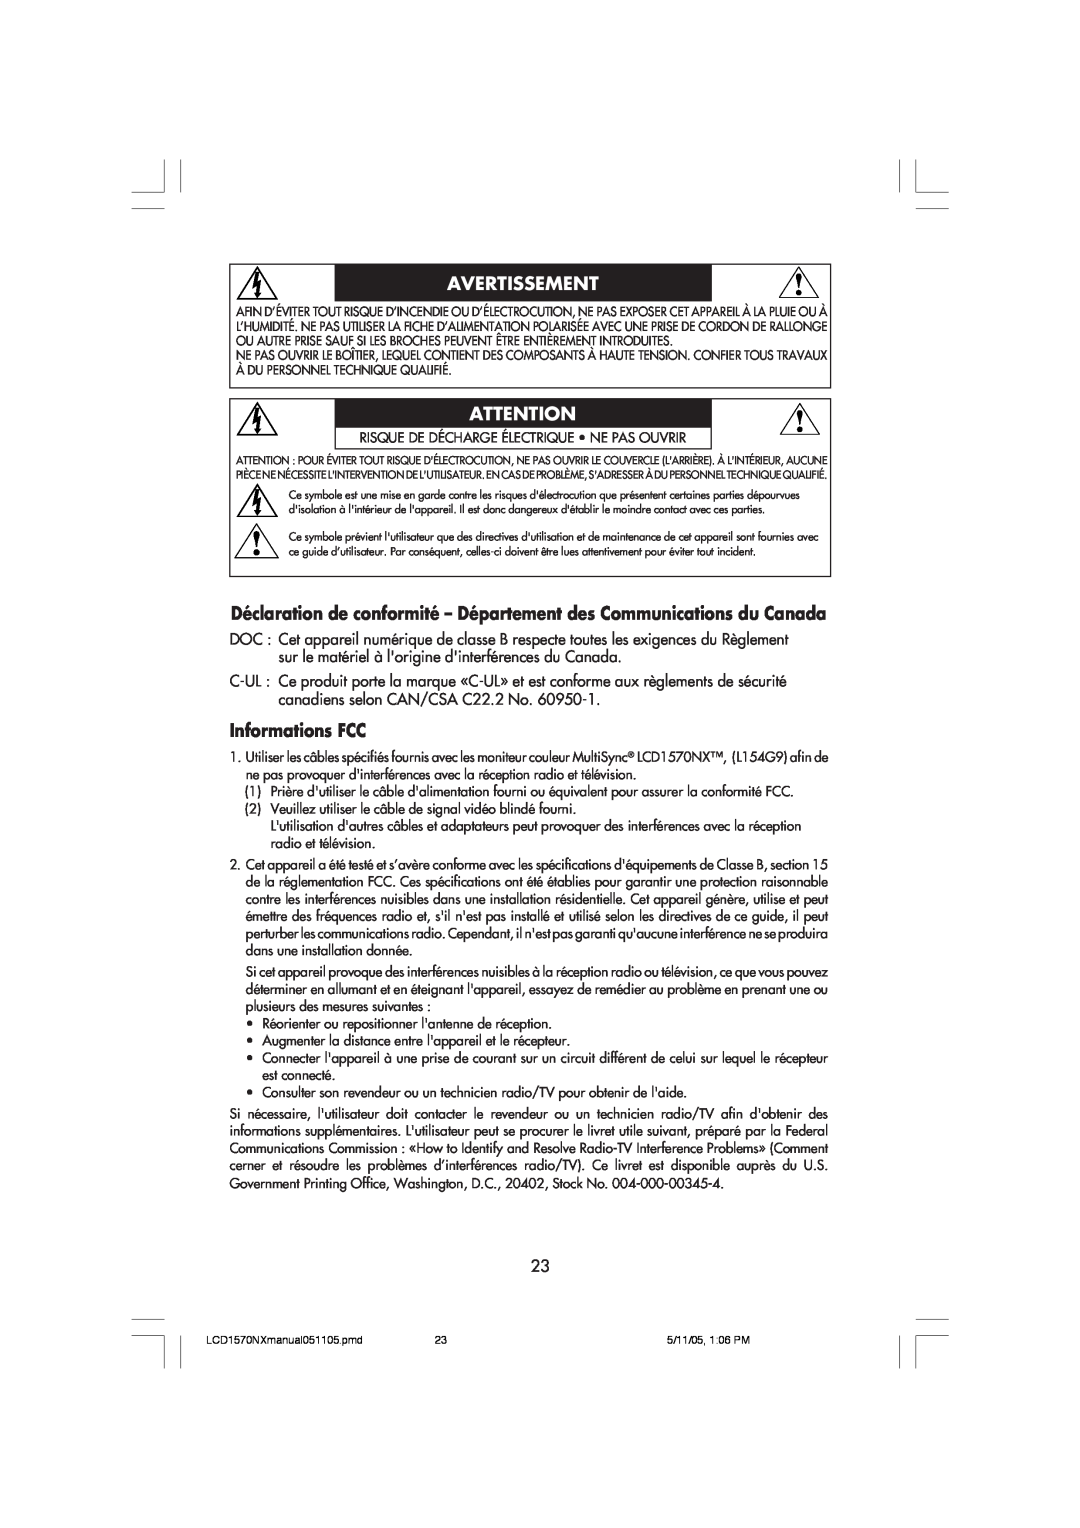 NEC LCD1570NX Déclaration de conformité - Département des Communications du Canada, Informations FCC, Avertissement 